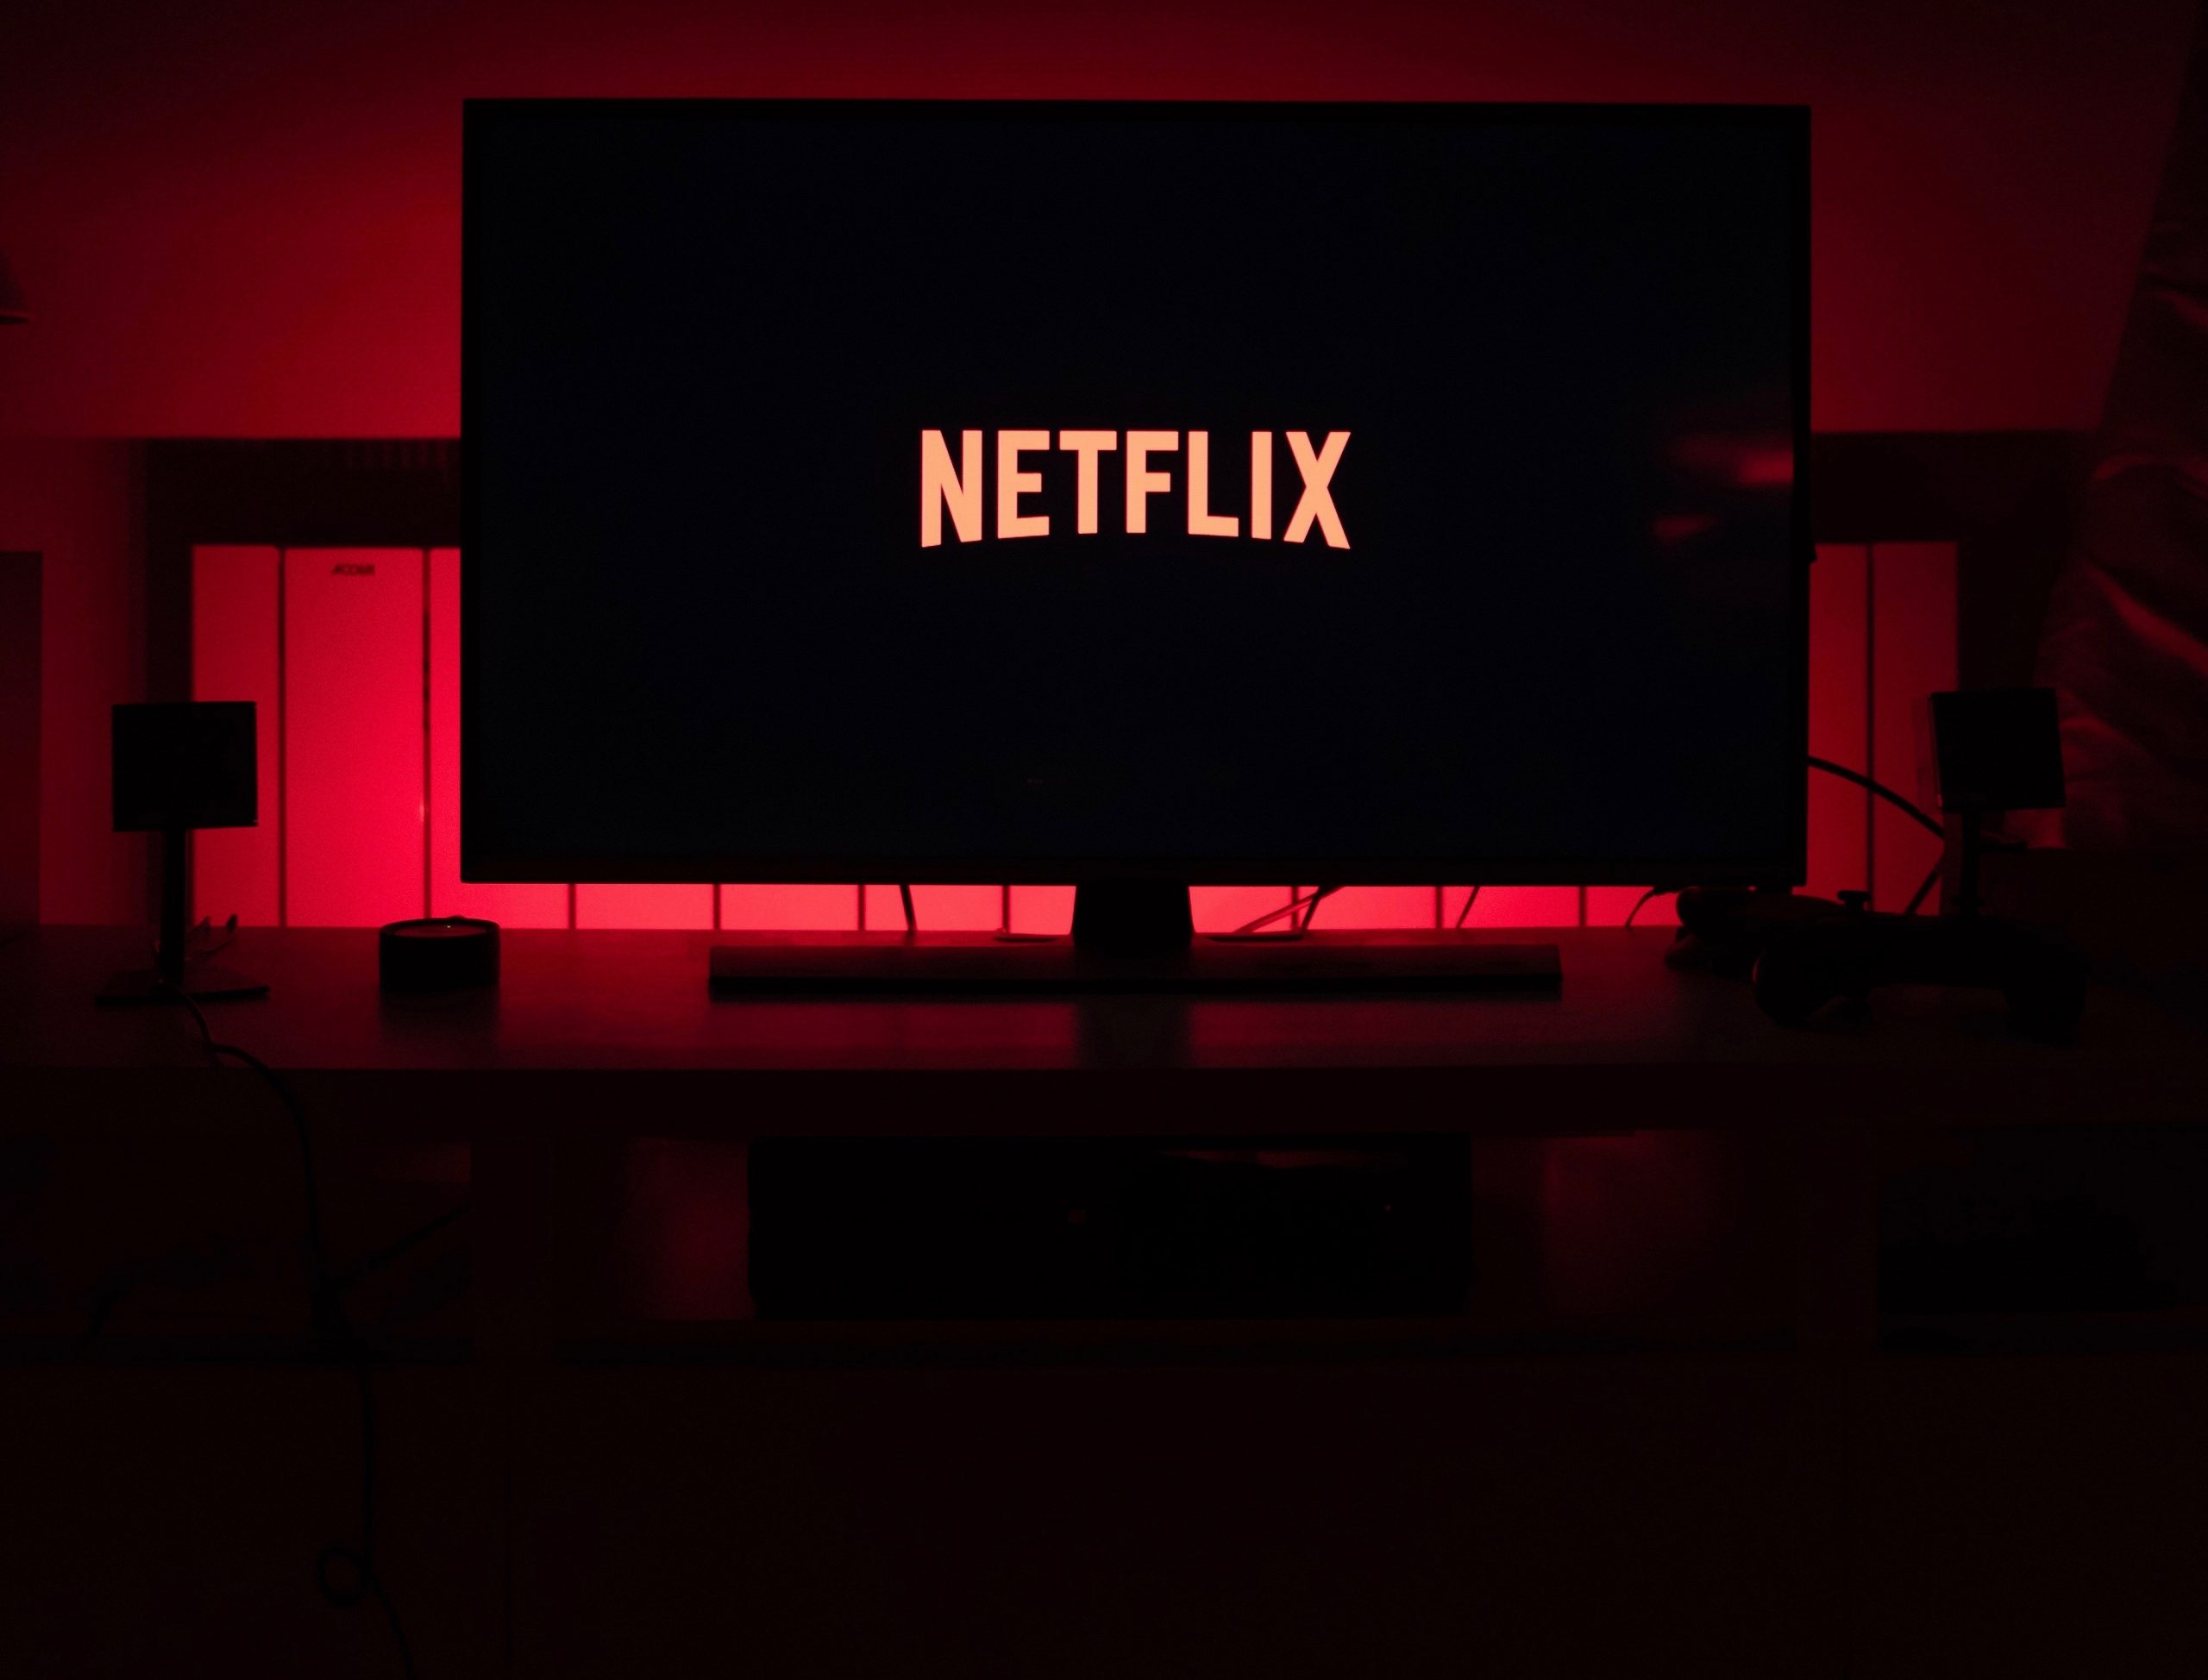 Netflix autoplay previews